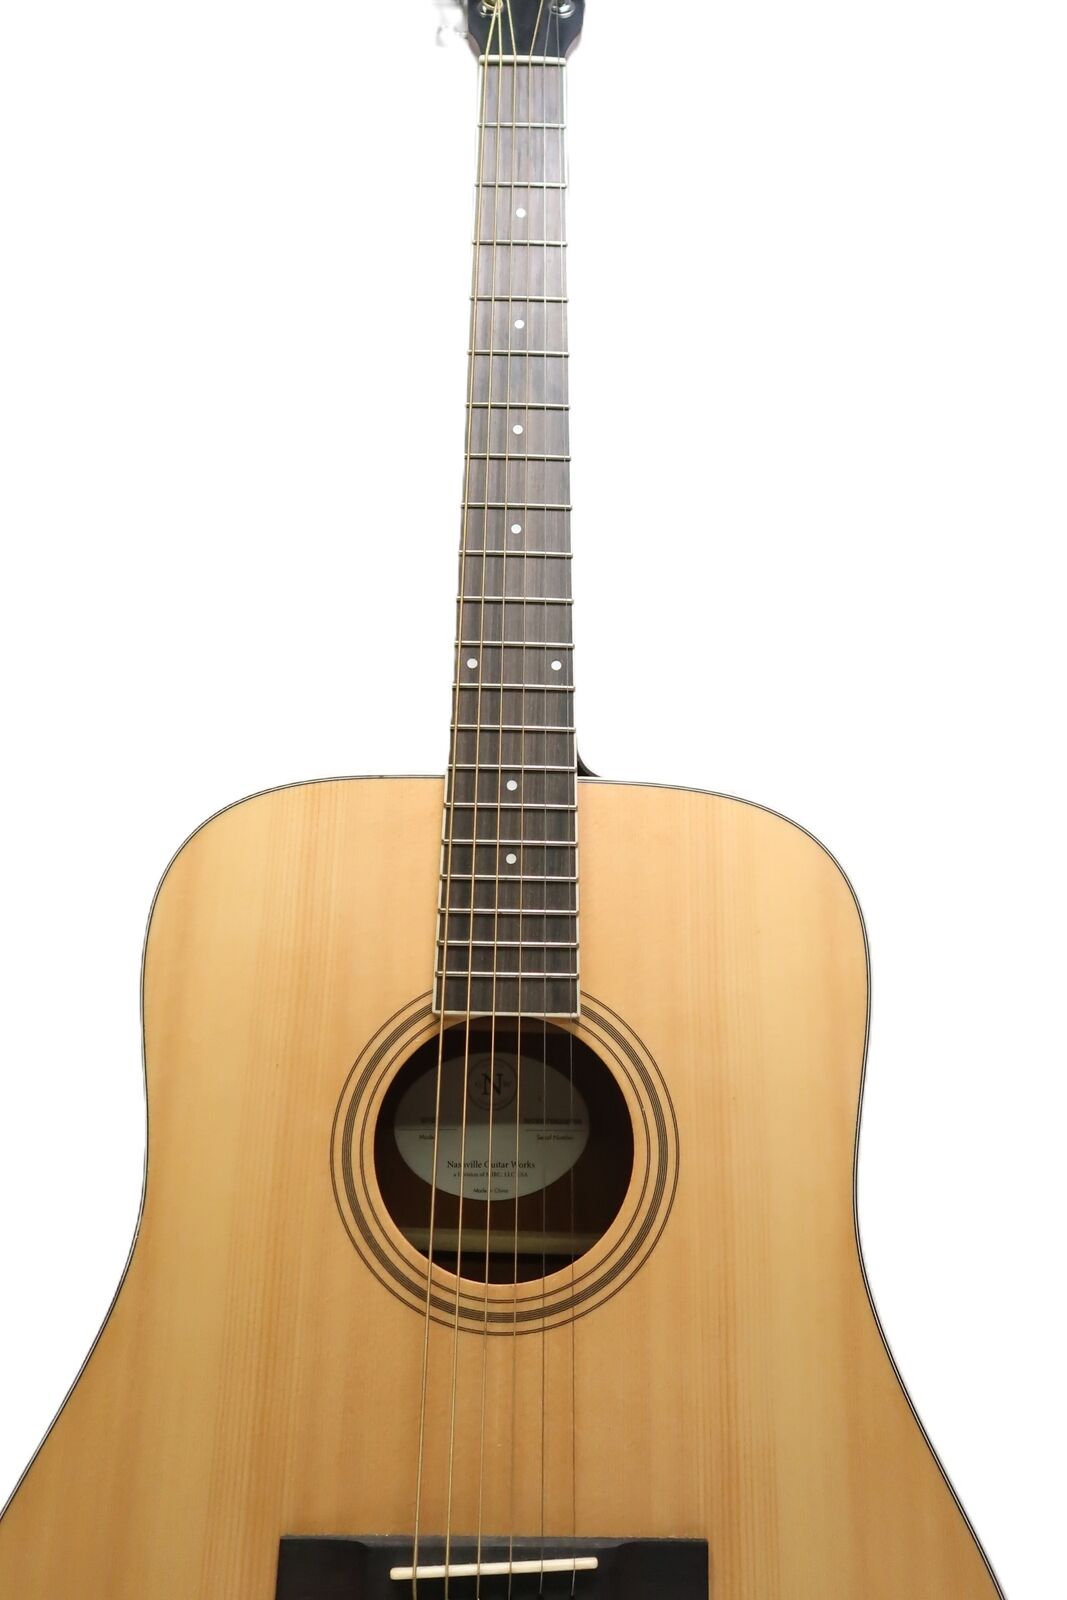 Nashville Guitar Works D10 Acoustic Guitar 9788 4